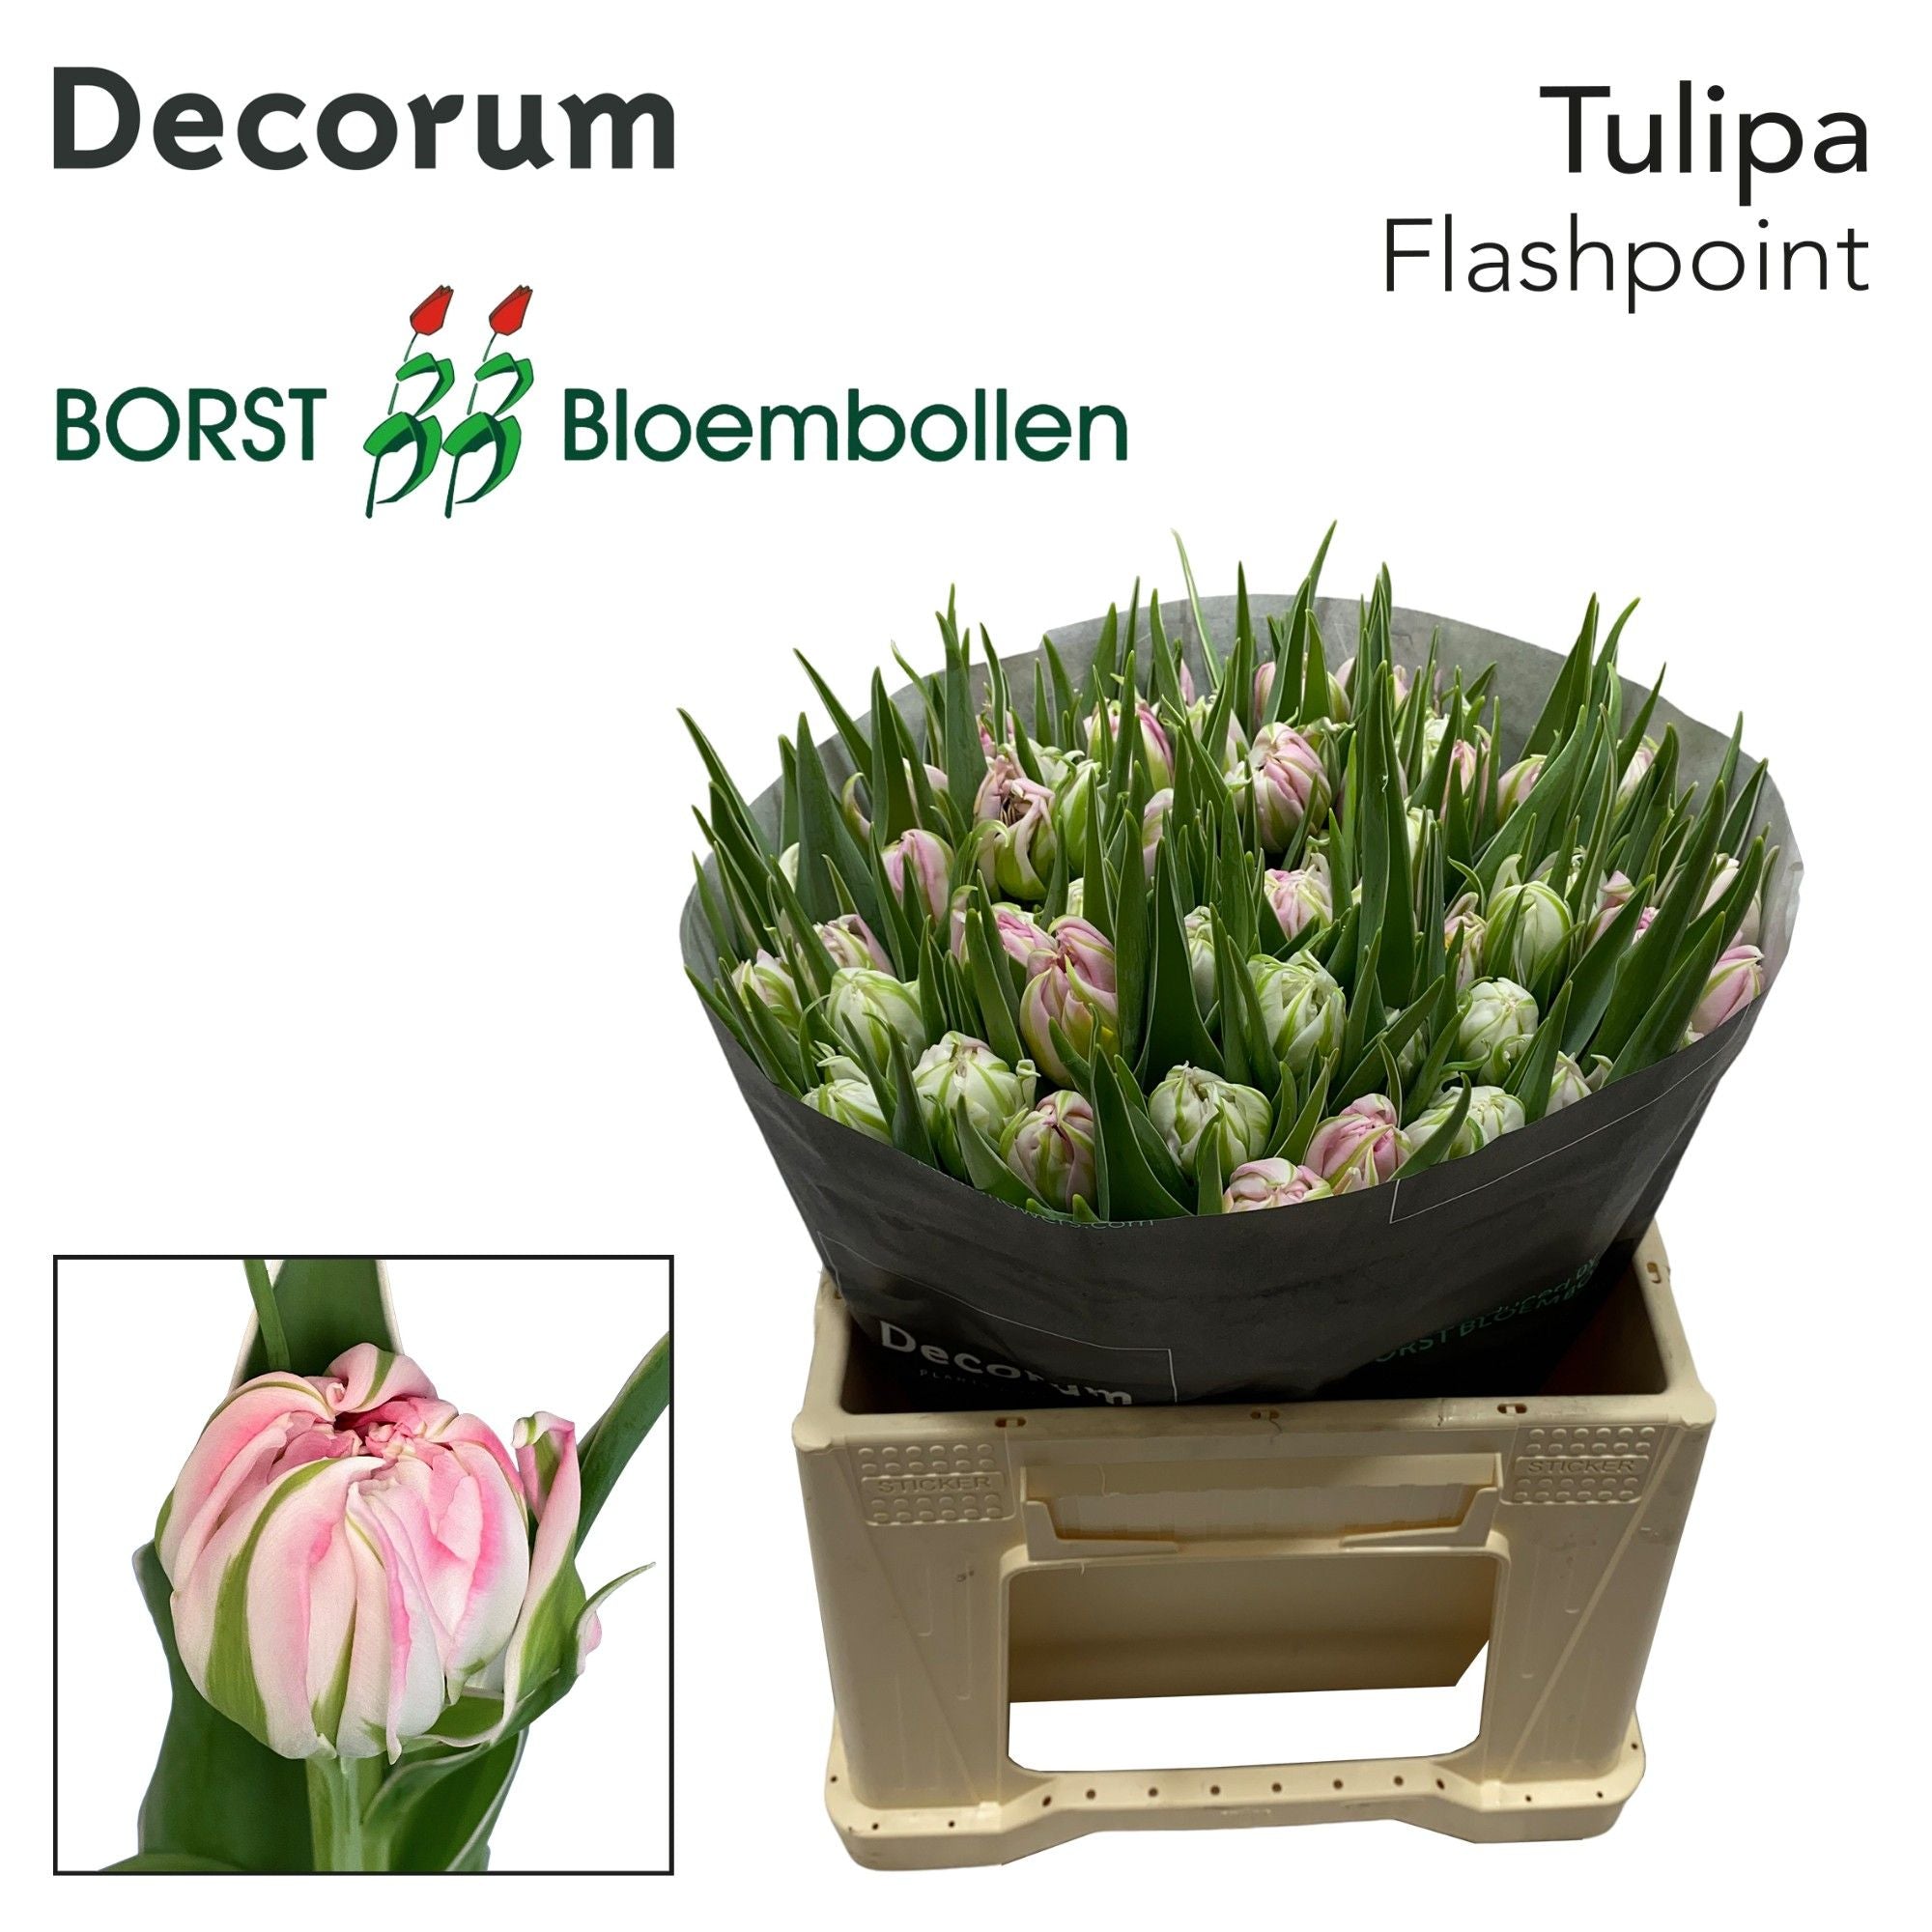 Tulpe "Flashpoint"